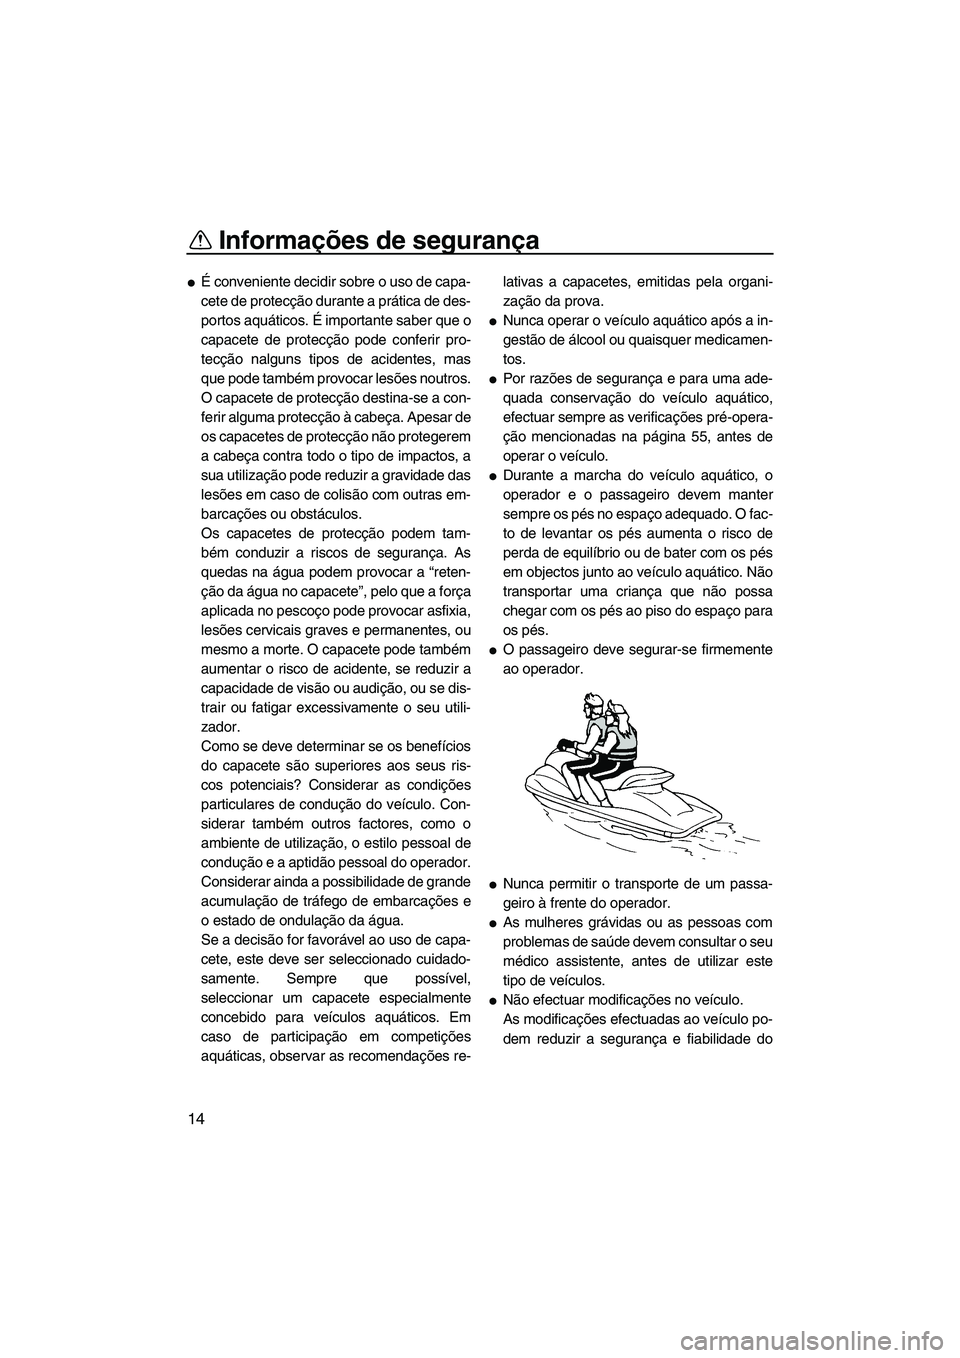 YAMAHA FZR 2012  Manual de utilização (in Portuguese) Informações de segurança
14
É conveniente decidir sobre o uso de capa-
cete de protecção durante a prática de des-
portos aquáticos. É importante saber que o
capacete de protecção pode con